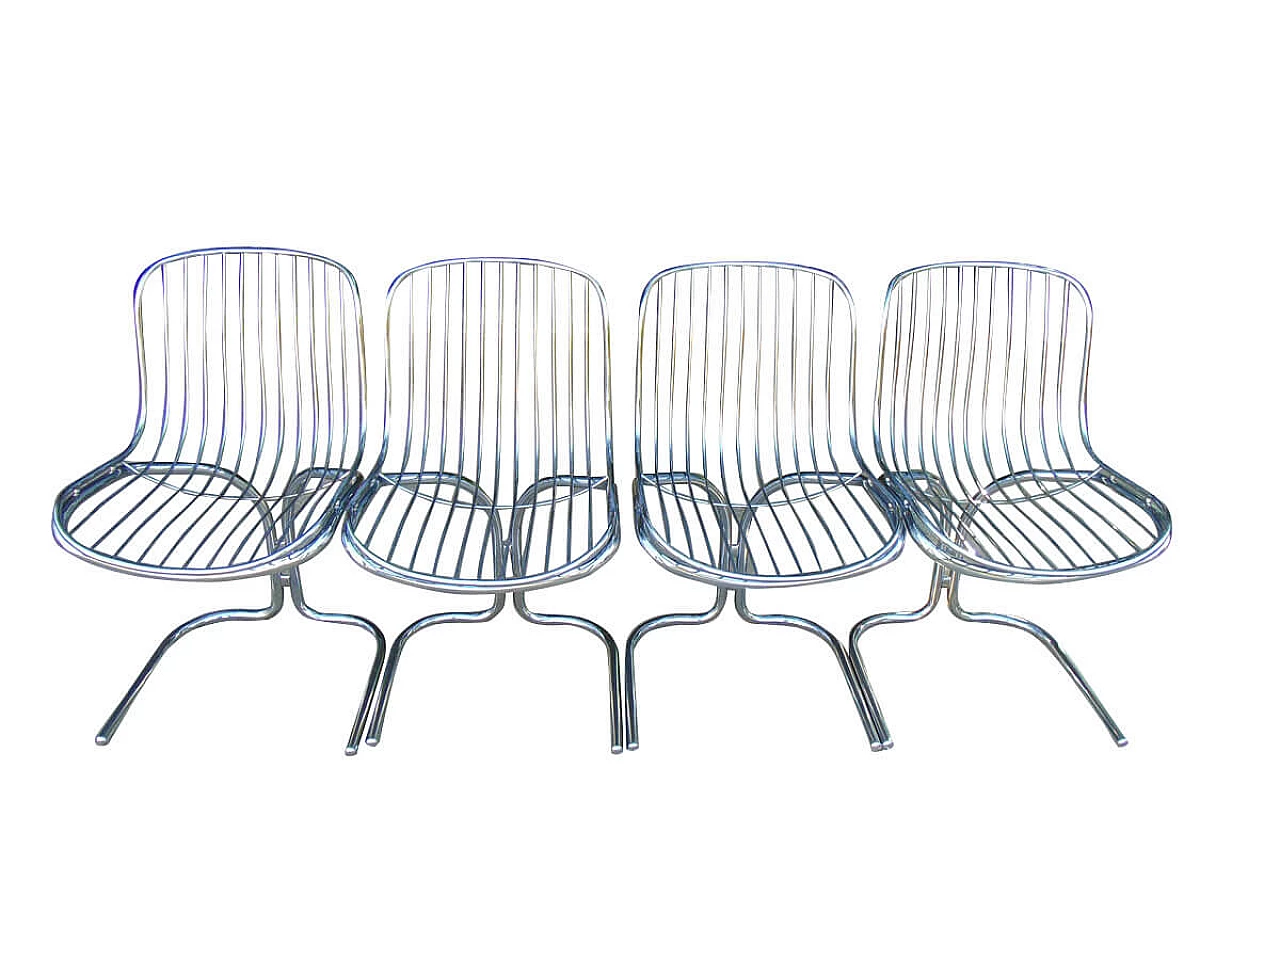 4 Radiofreccia Chairs by Gastone Rinaldi, '70s 1309408